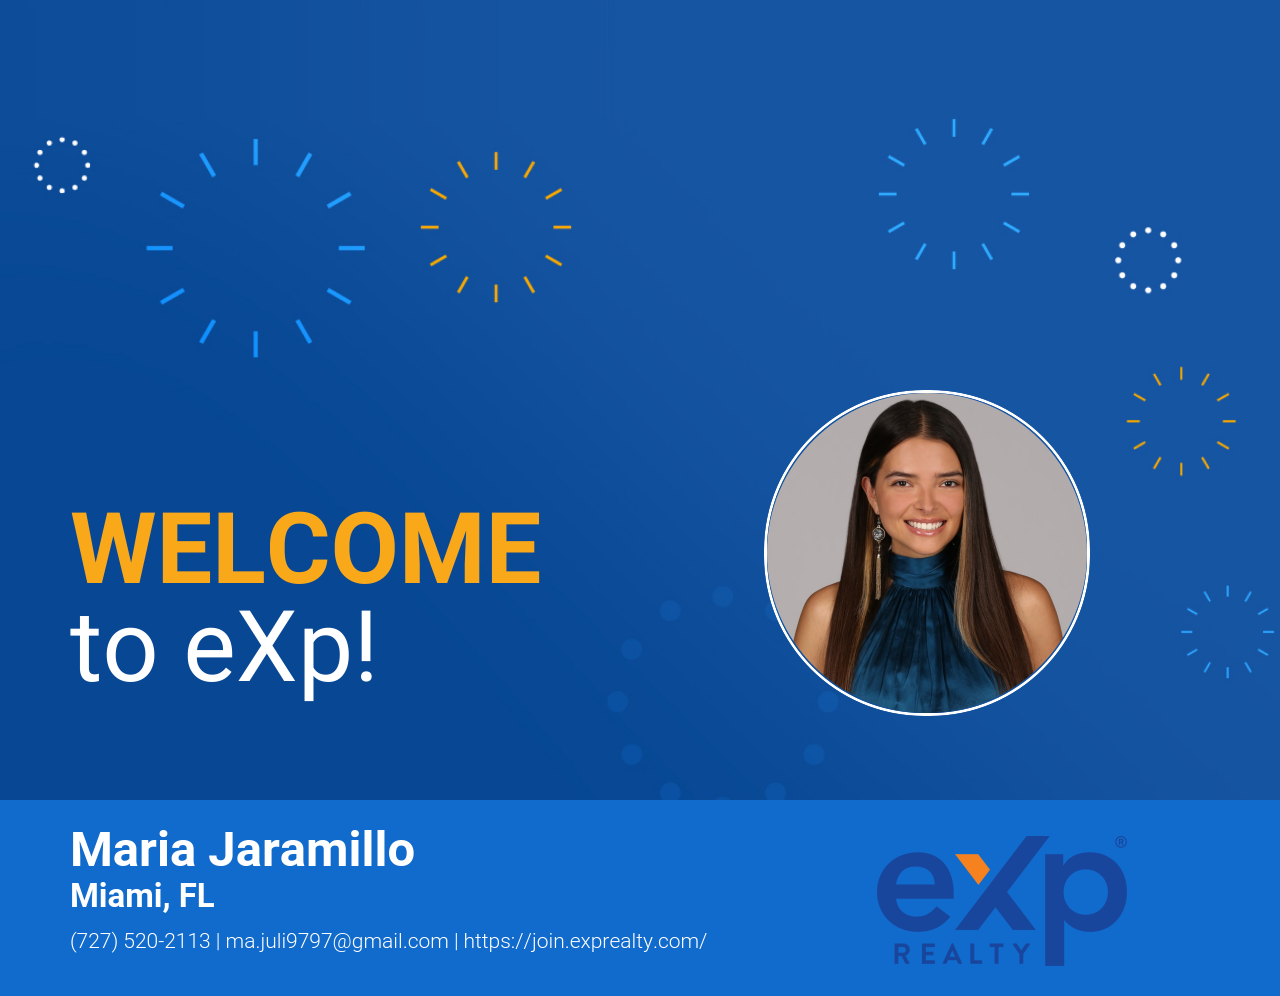 Maria Jaramillo Joined eXp Realty!